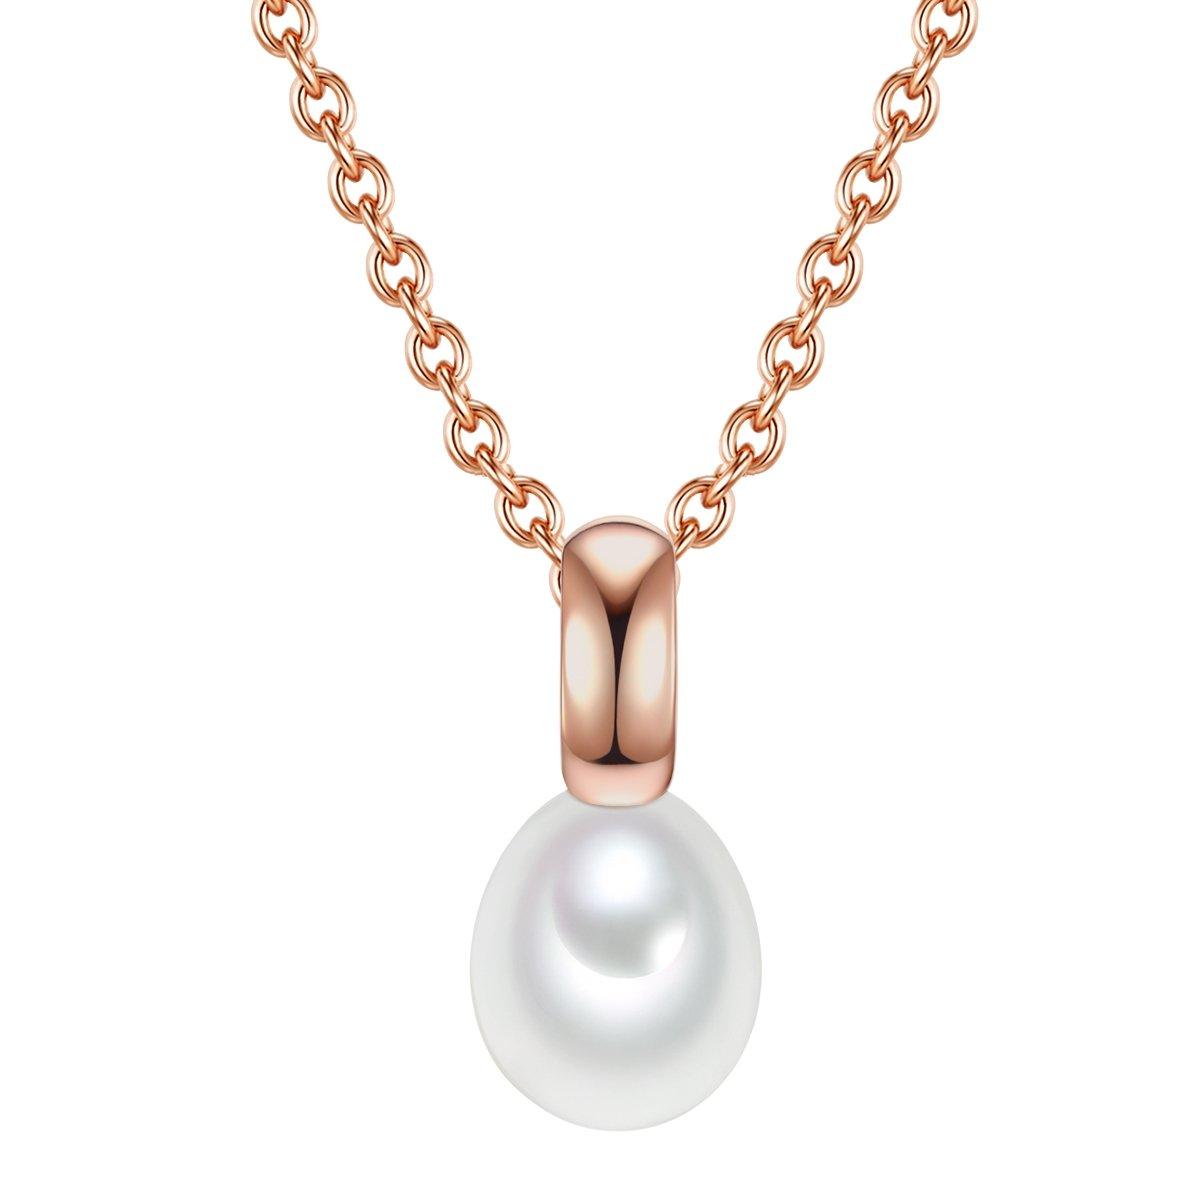 Halskette Damen Goldrosa 42cm von Valero Pearls